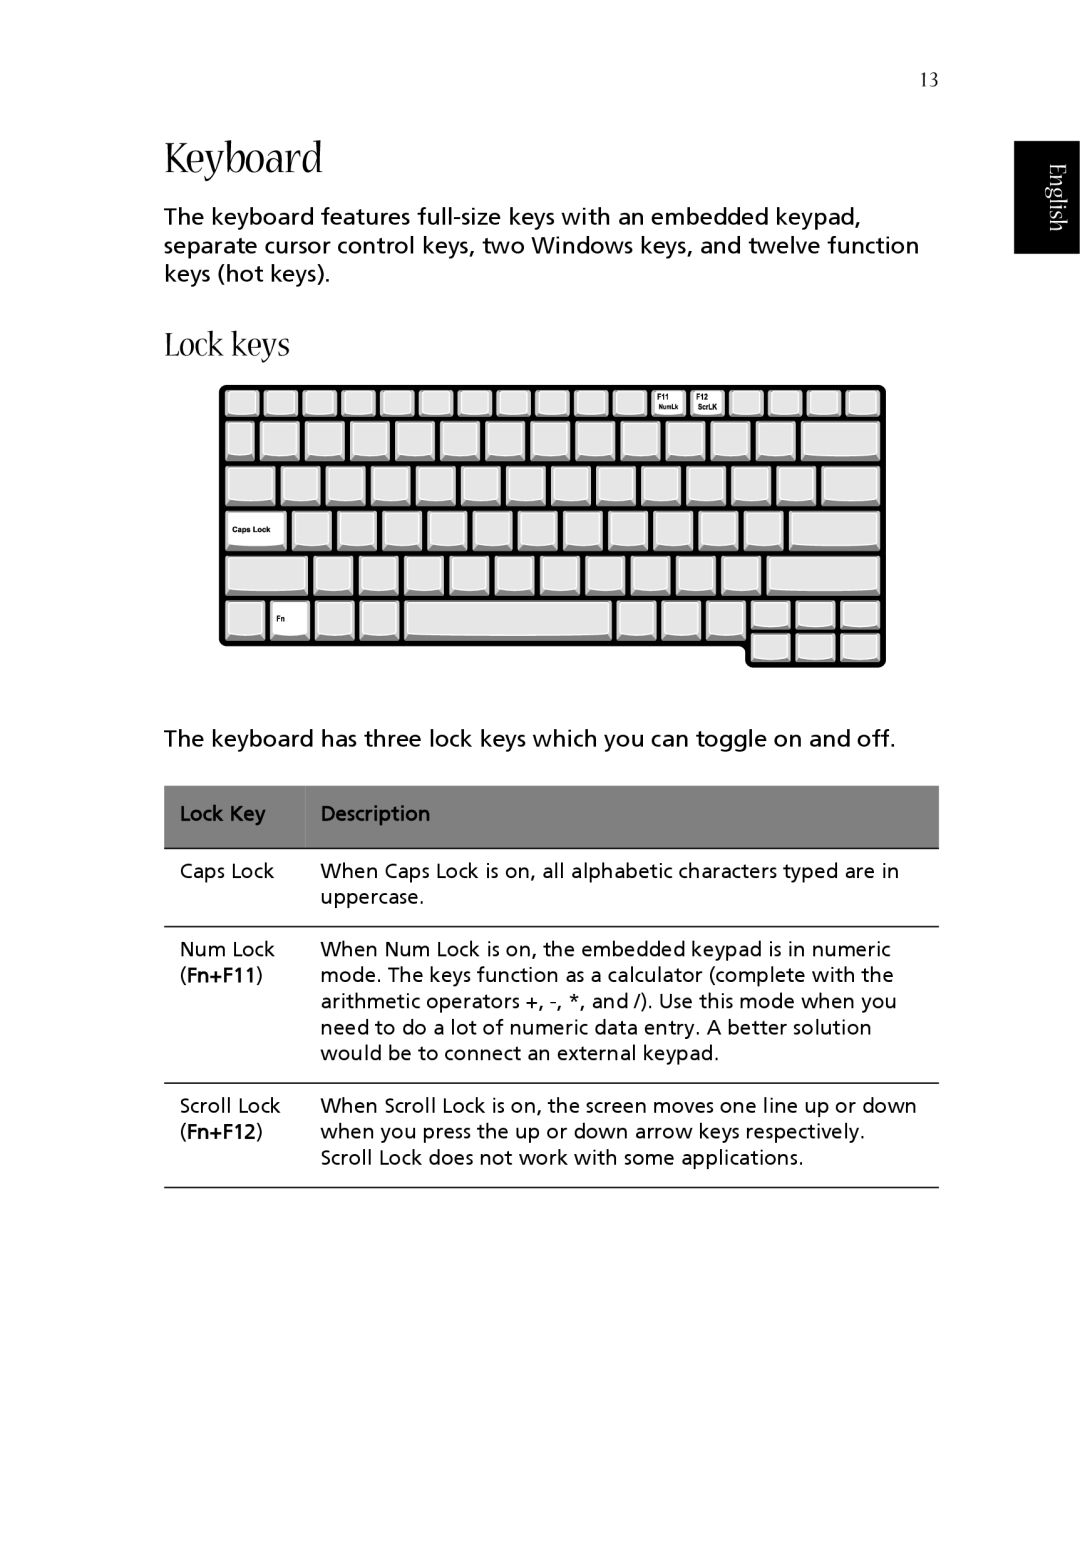 Acer 1360 manual Keyboard, Lock keys, English, Lock Key, Description, Fn+F11, Fn+F12 